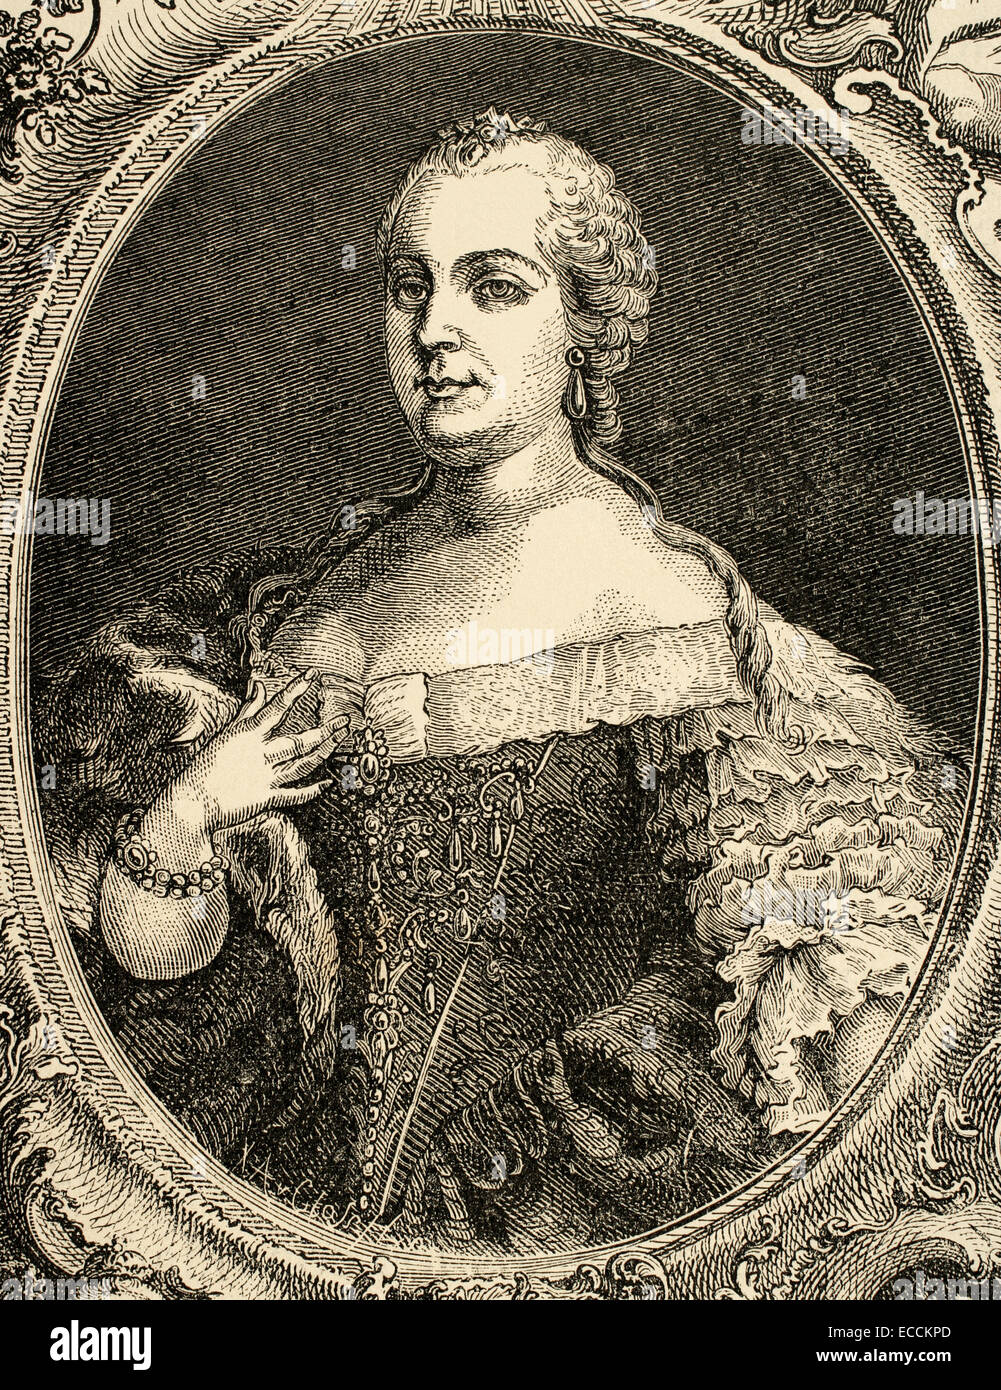 Maria Theresa (1717-1780), l'Arciduchessa d Ausria, regina di Ungheria e di Boemia. Ritratto. Incisione, 1882. Foto Stock